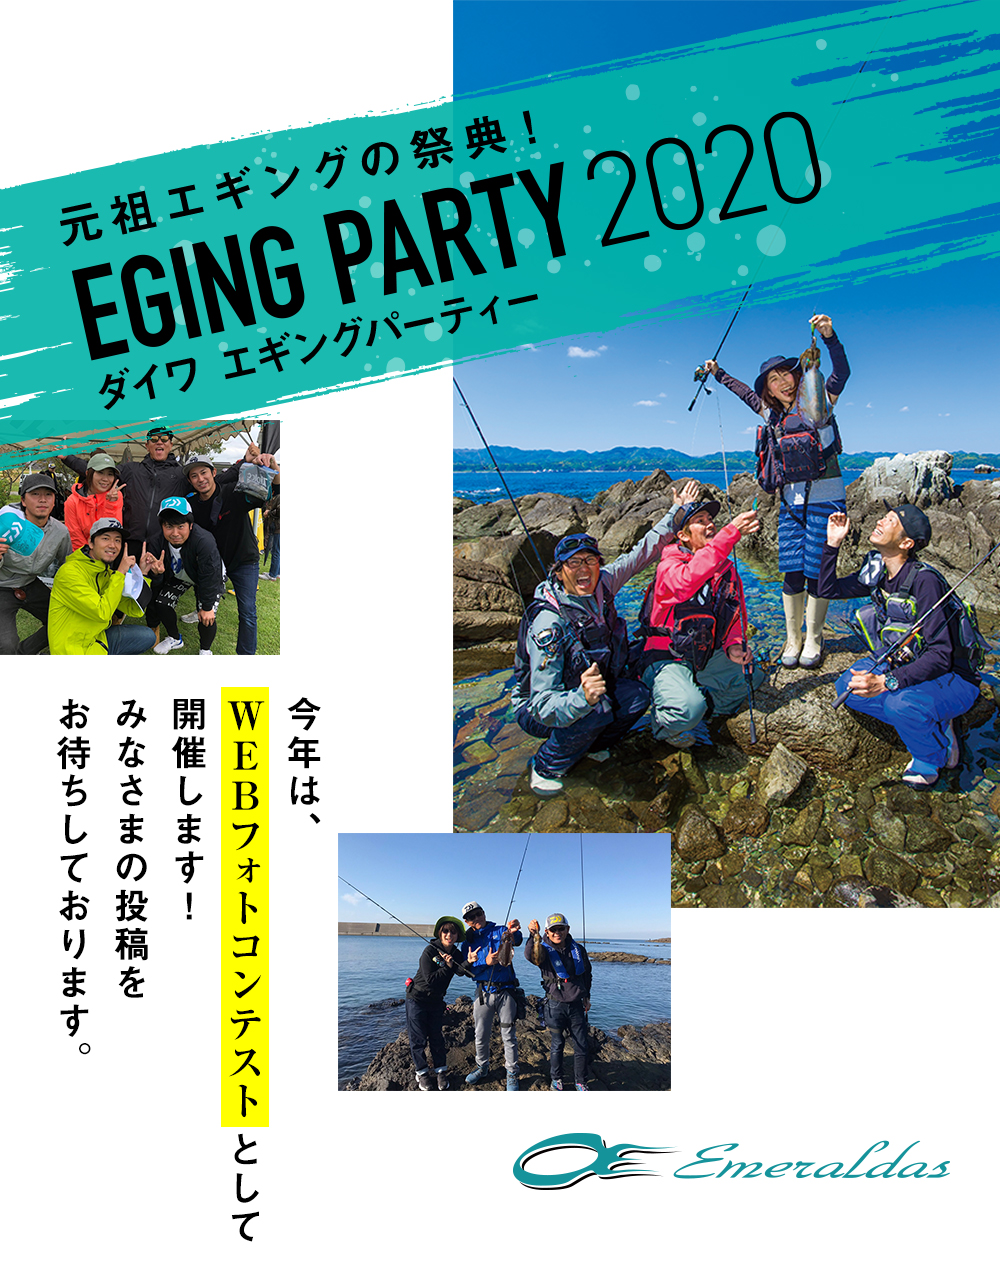 ダイワ エギングパーティー Eging Party Daiwa